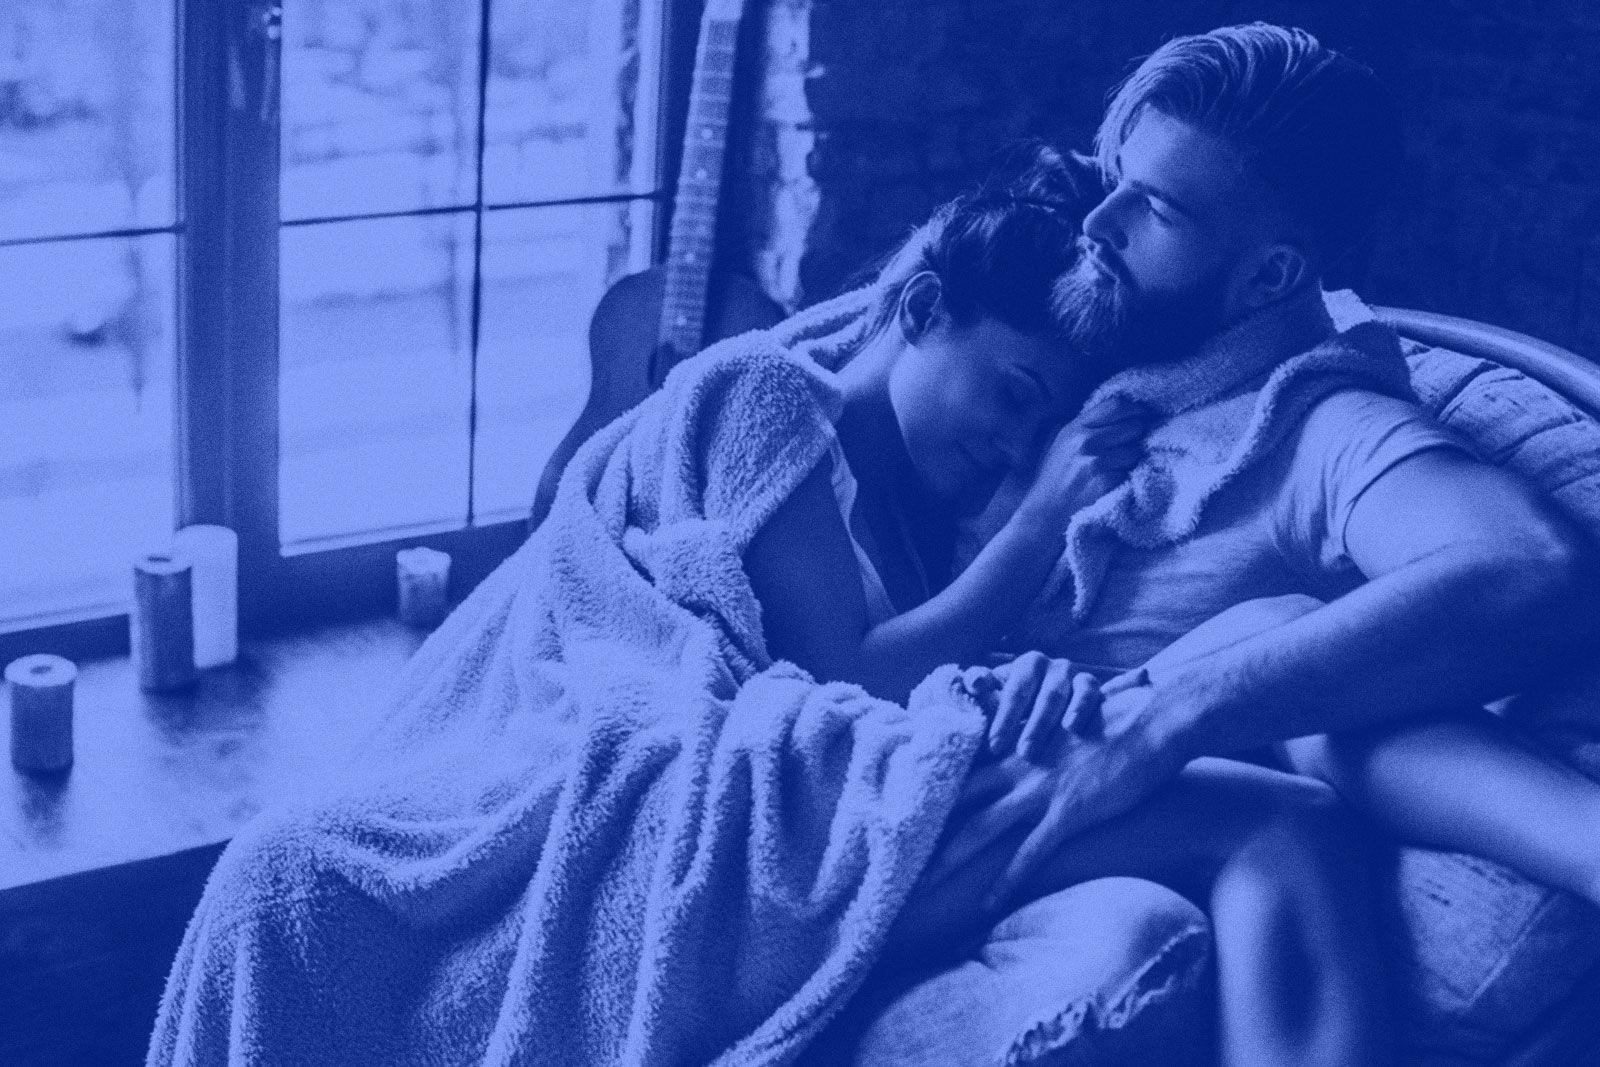 Women need more sleep: the reasons behind the gender sleep gap